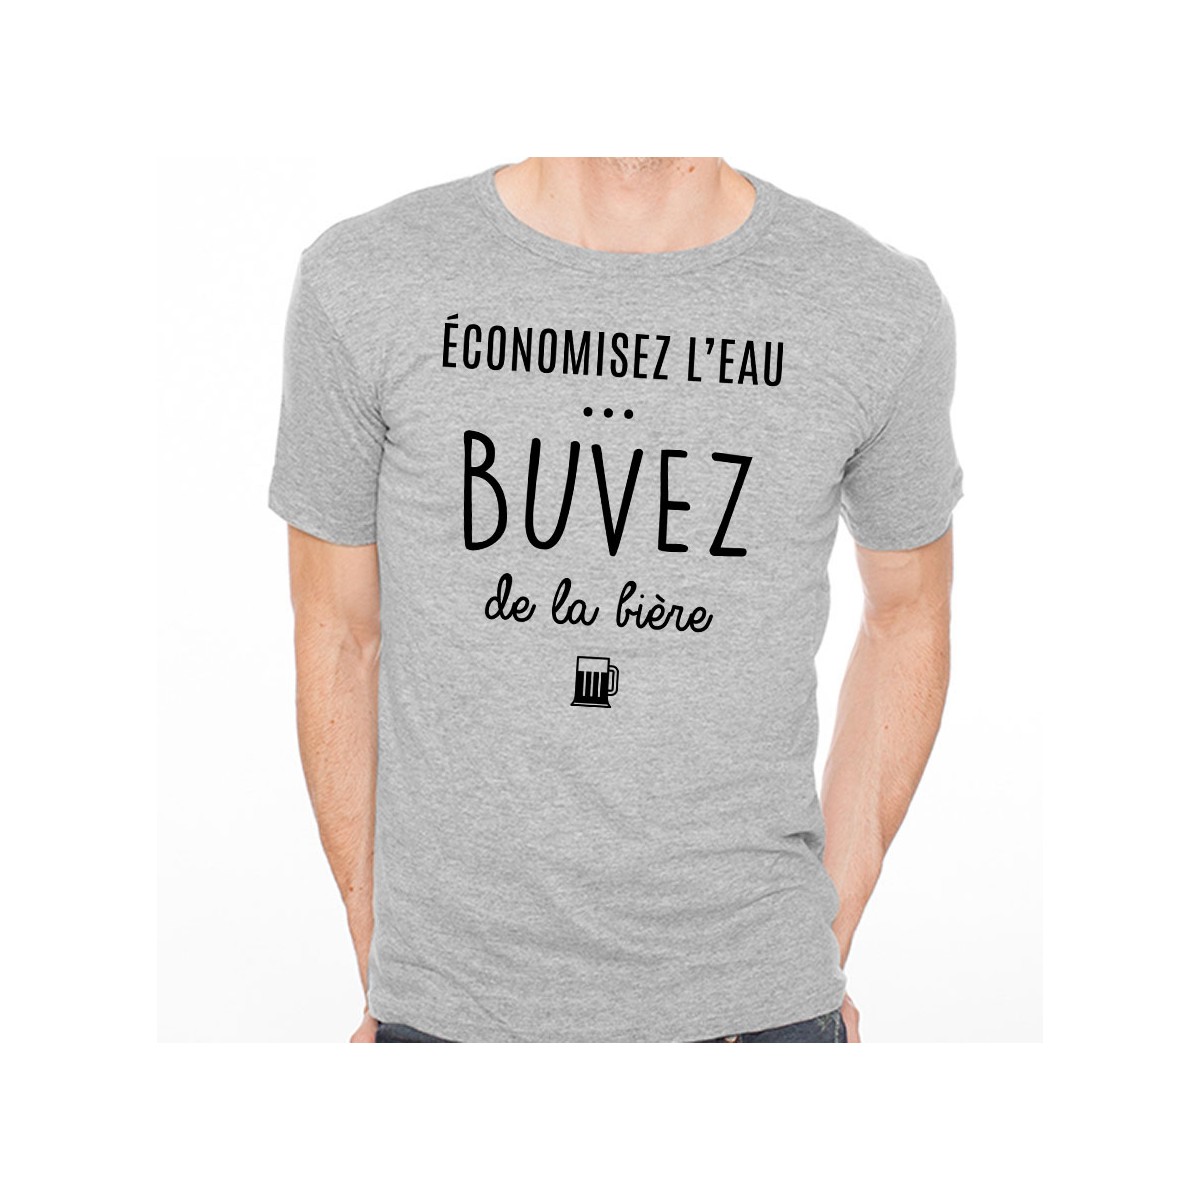 T-shirt Buvez de la bière